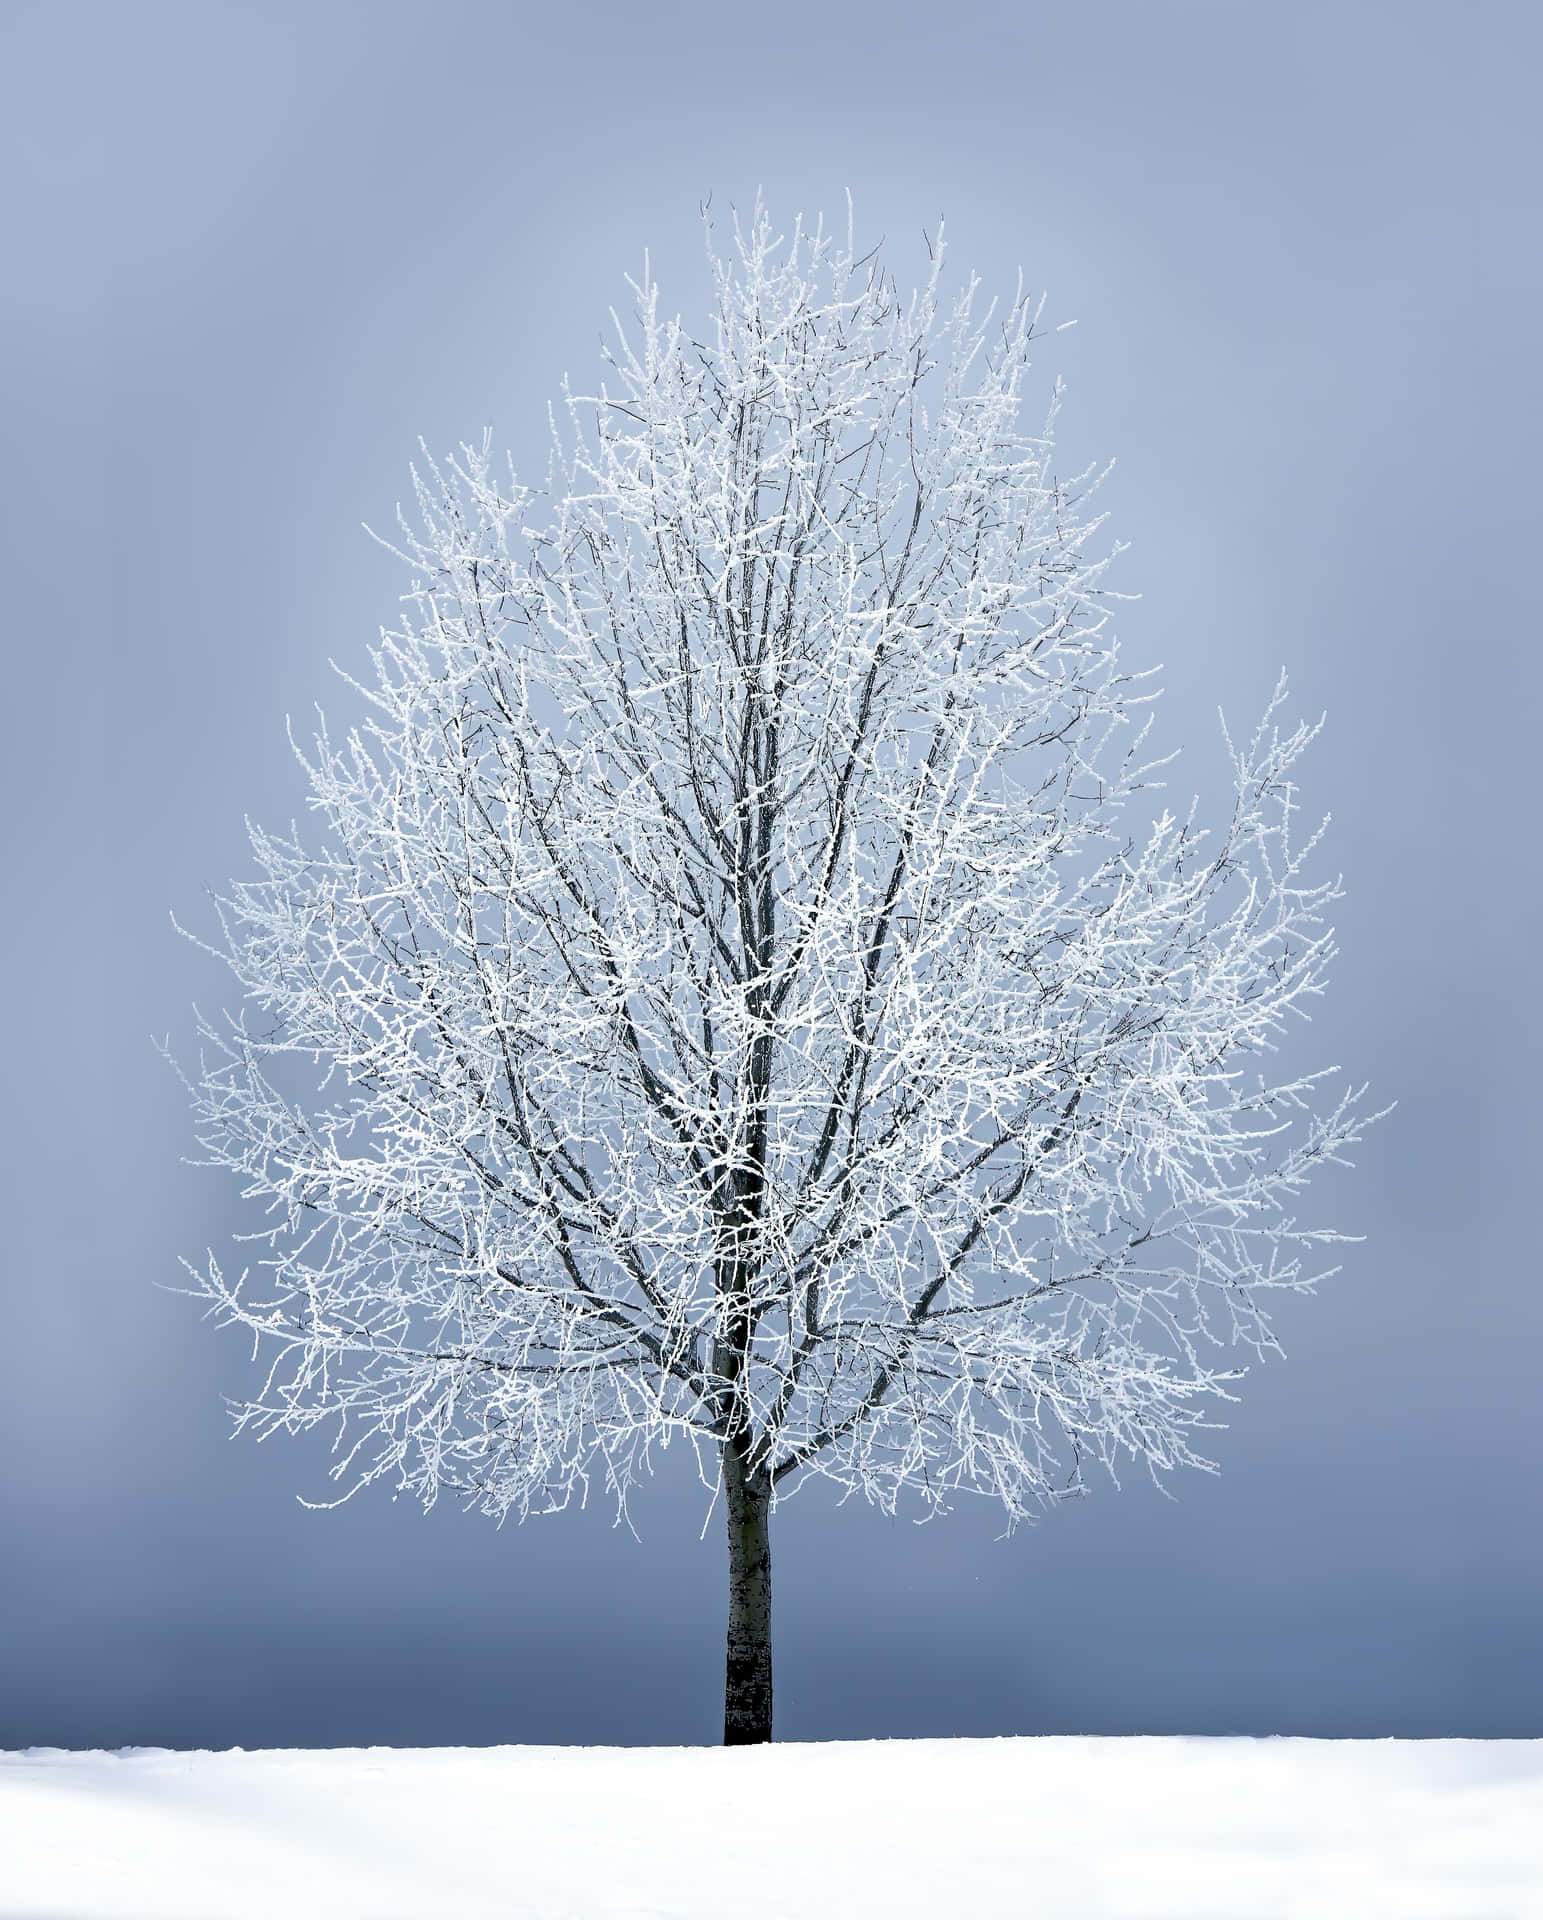 Winterlichesschneebild Eines Baums In Einer Verschneiten Märchenlandschaft.